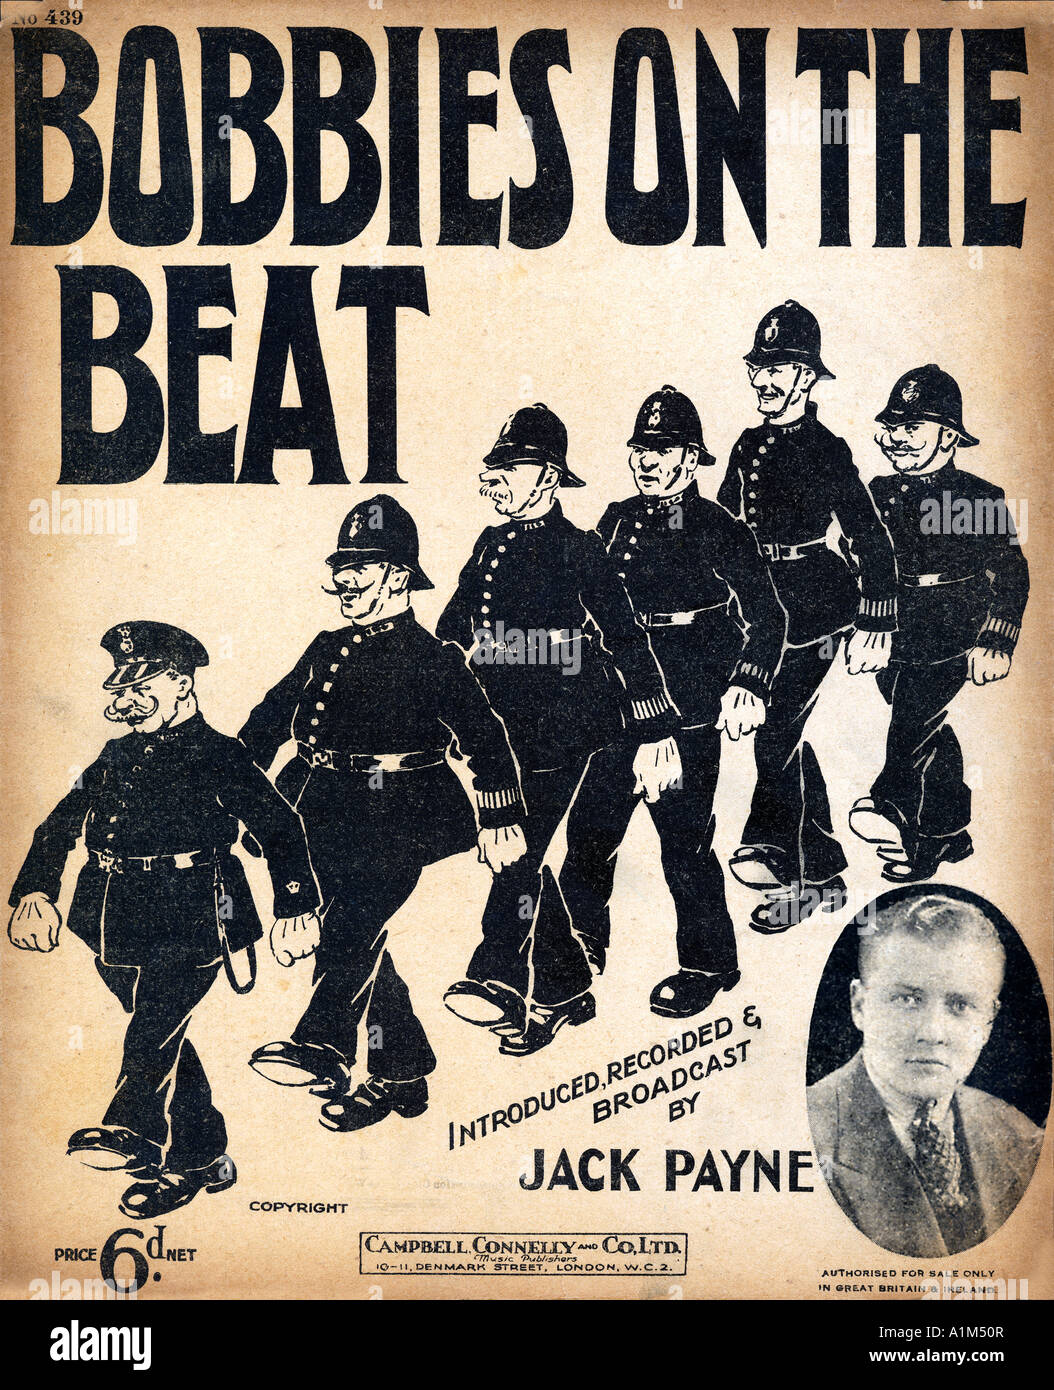 Bobbies sur le Beat 1930 feuille de musique pour couvrir une chanson comique de Jack Payne sur un mauvais groupe de policiers assortis Banque D'Images